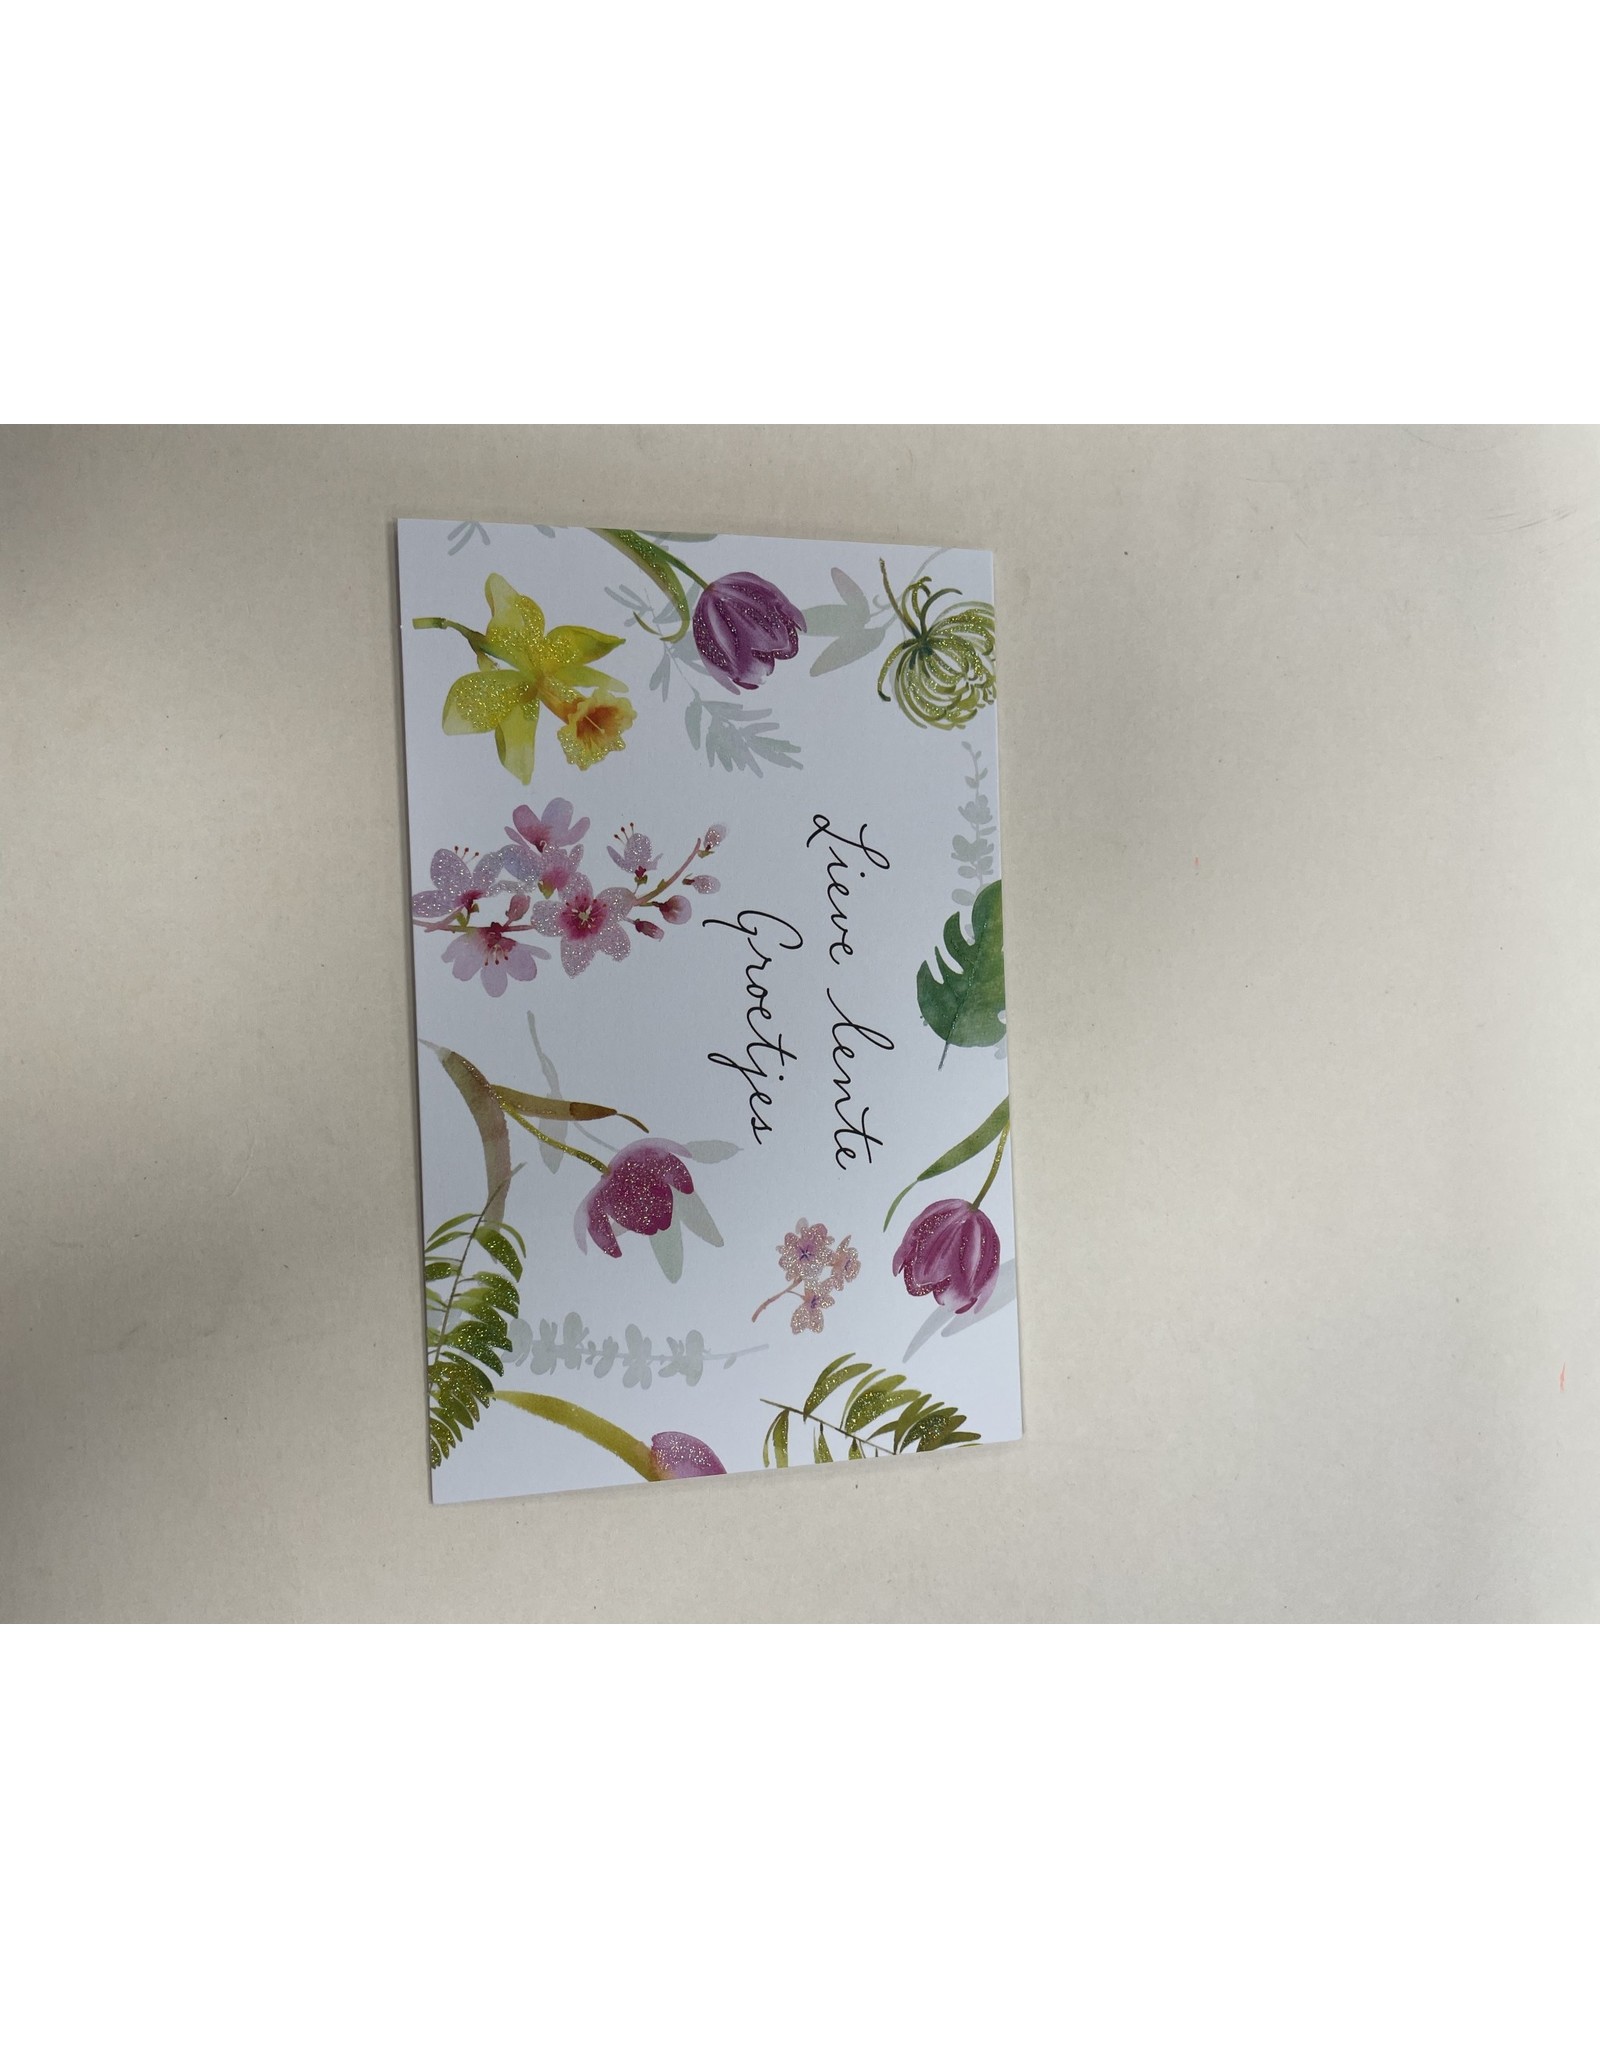 Hallmark Lieve lente groetjes- Hallmark met envelop